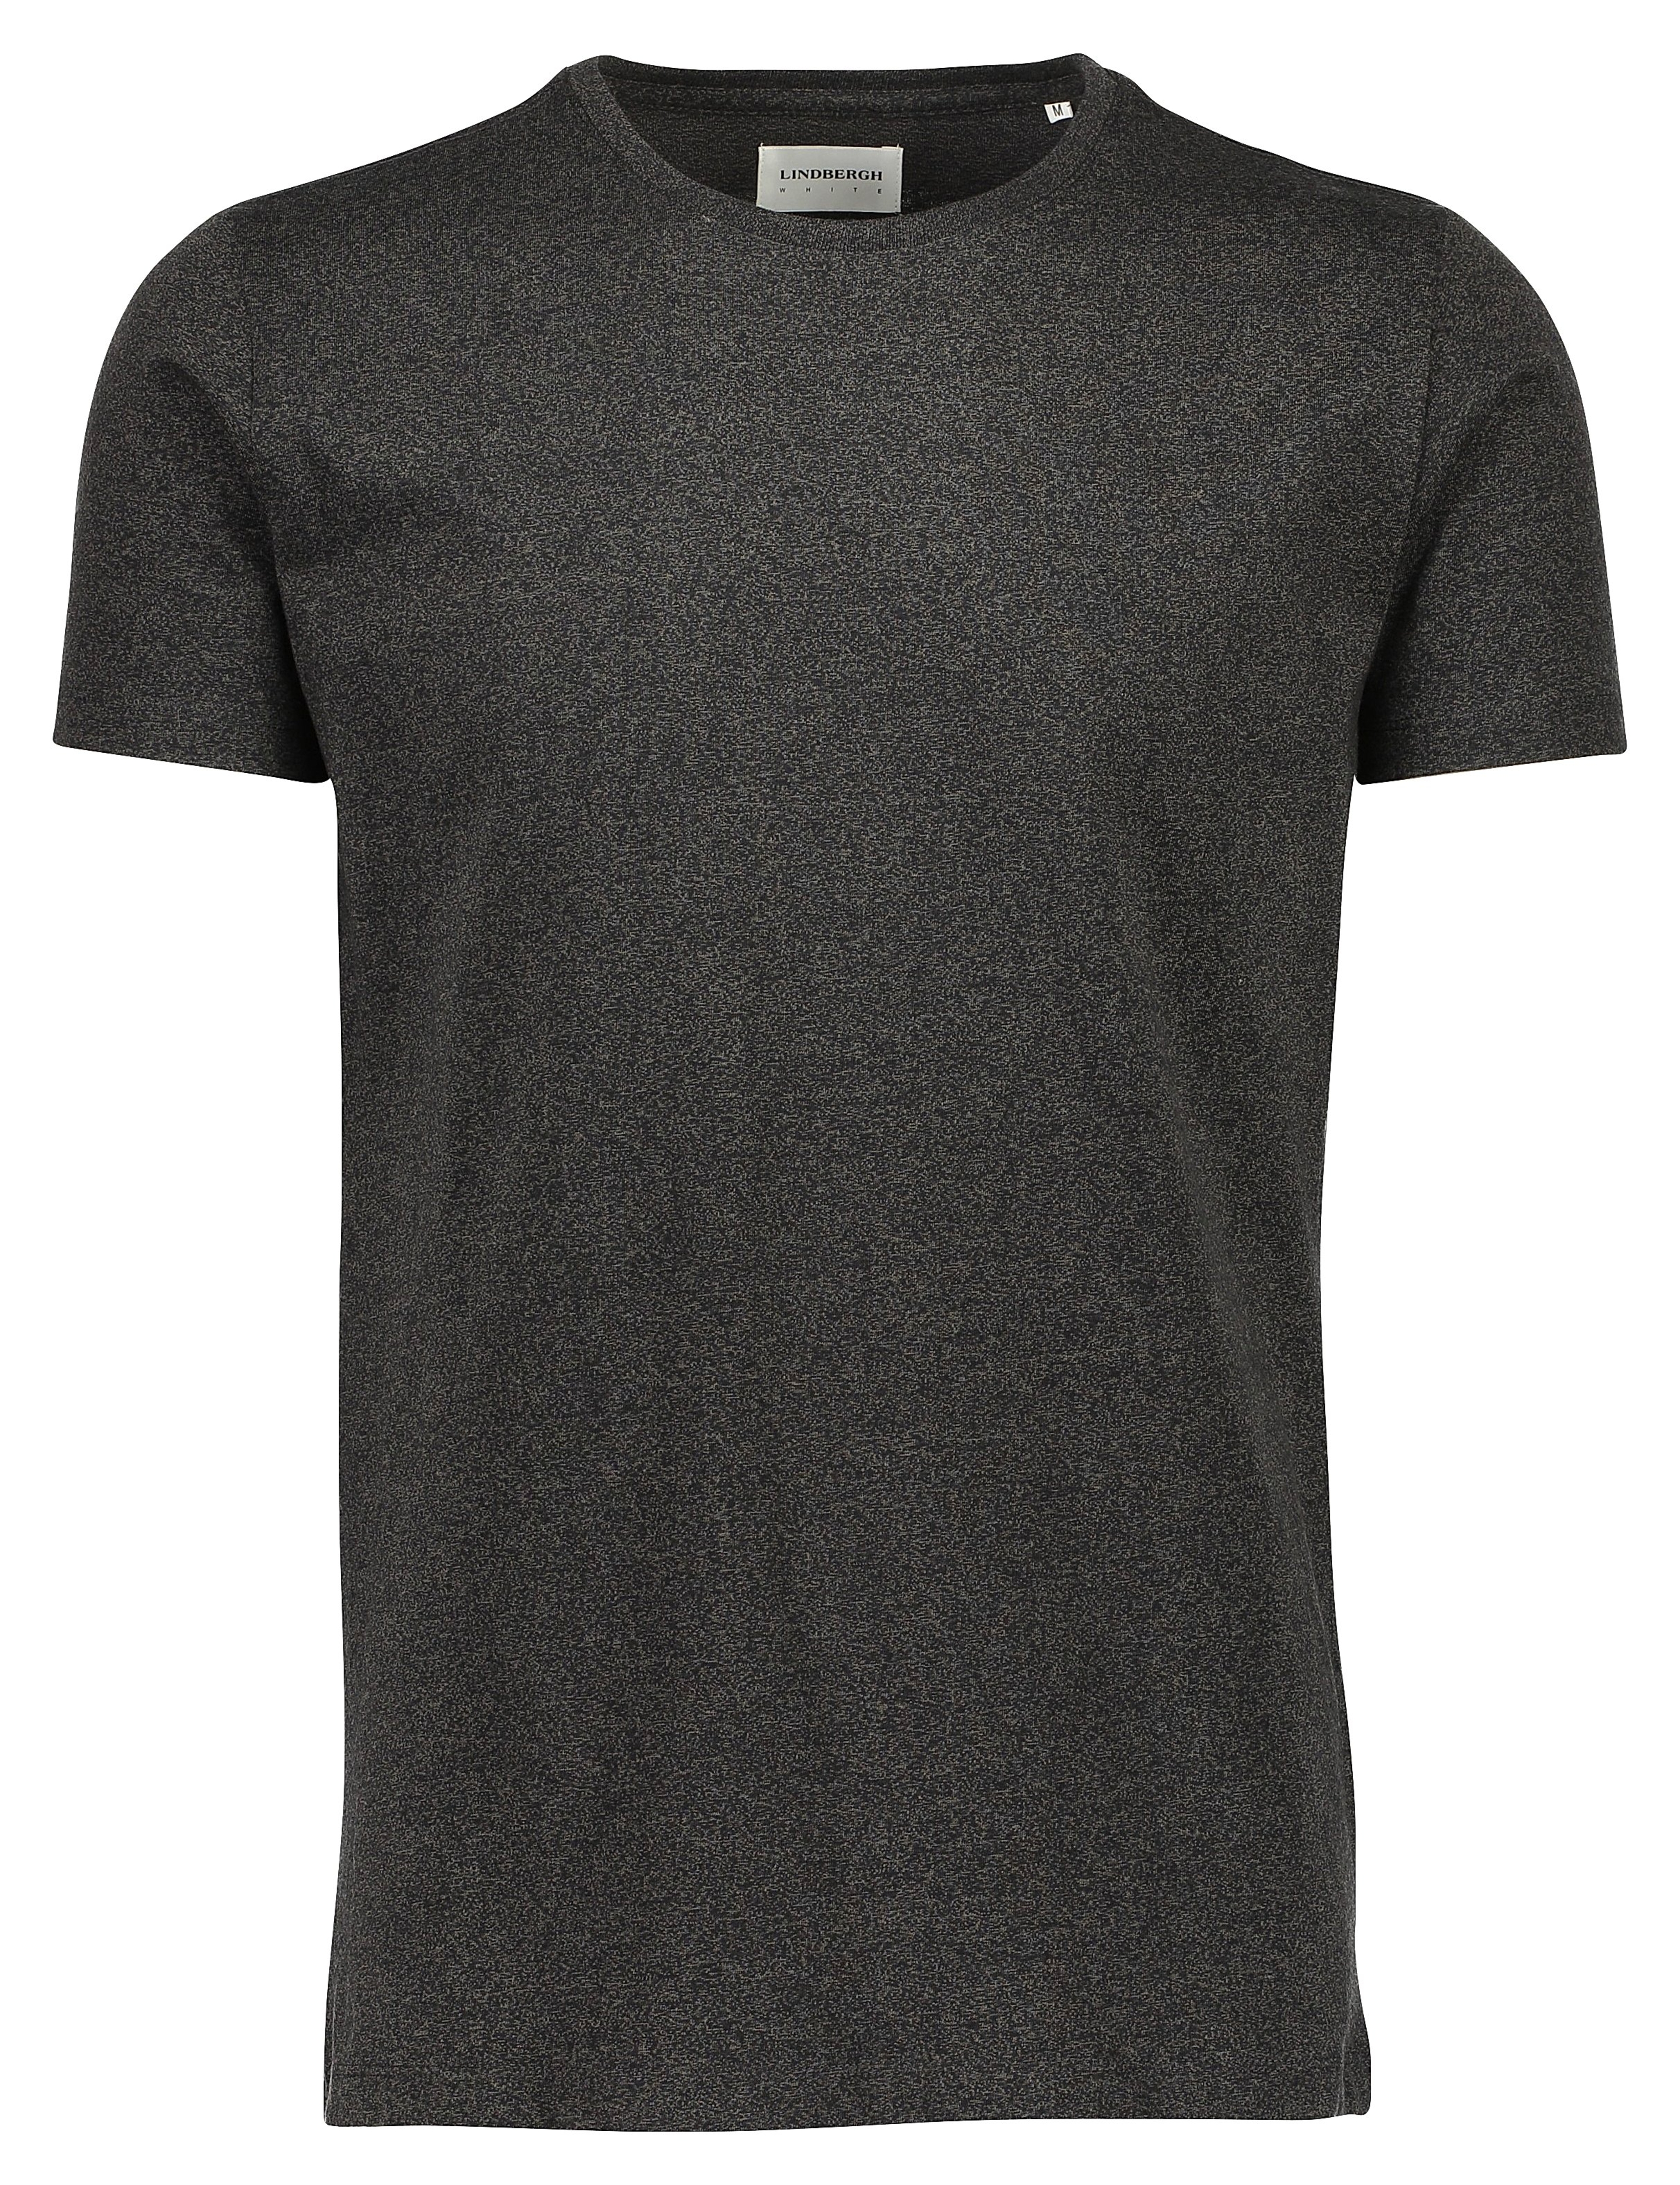 Lindbergh T-Shirt schwarz / deep black mix